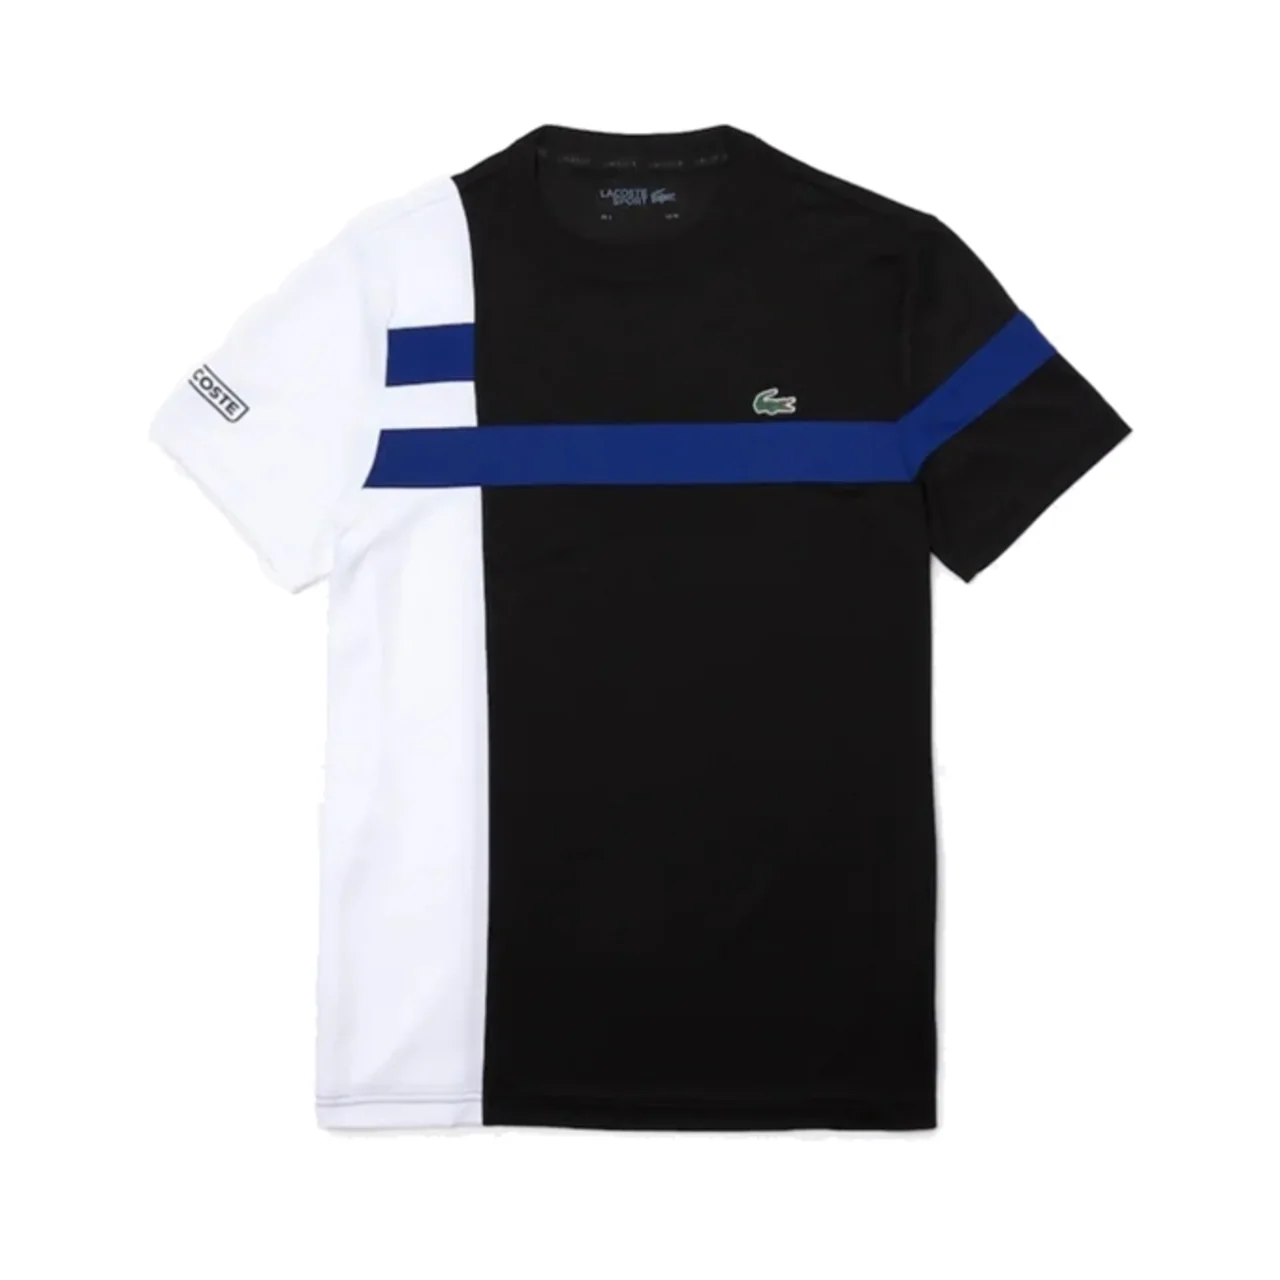 Lacoste Colourblock Breathable Piqué Black/White/Blue Size XL